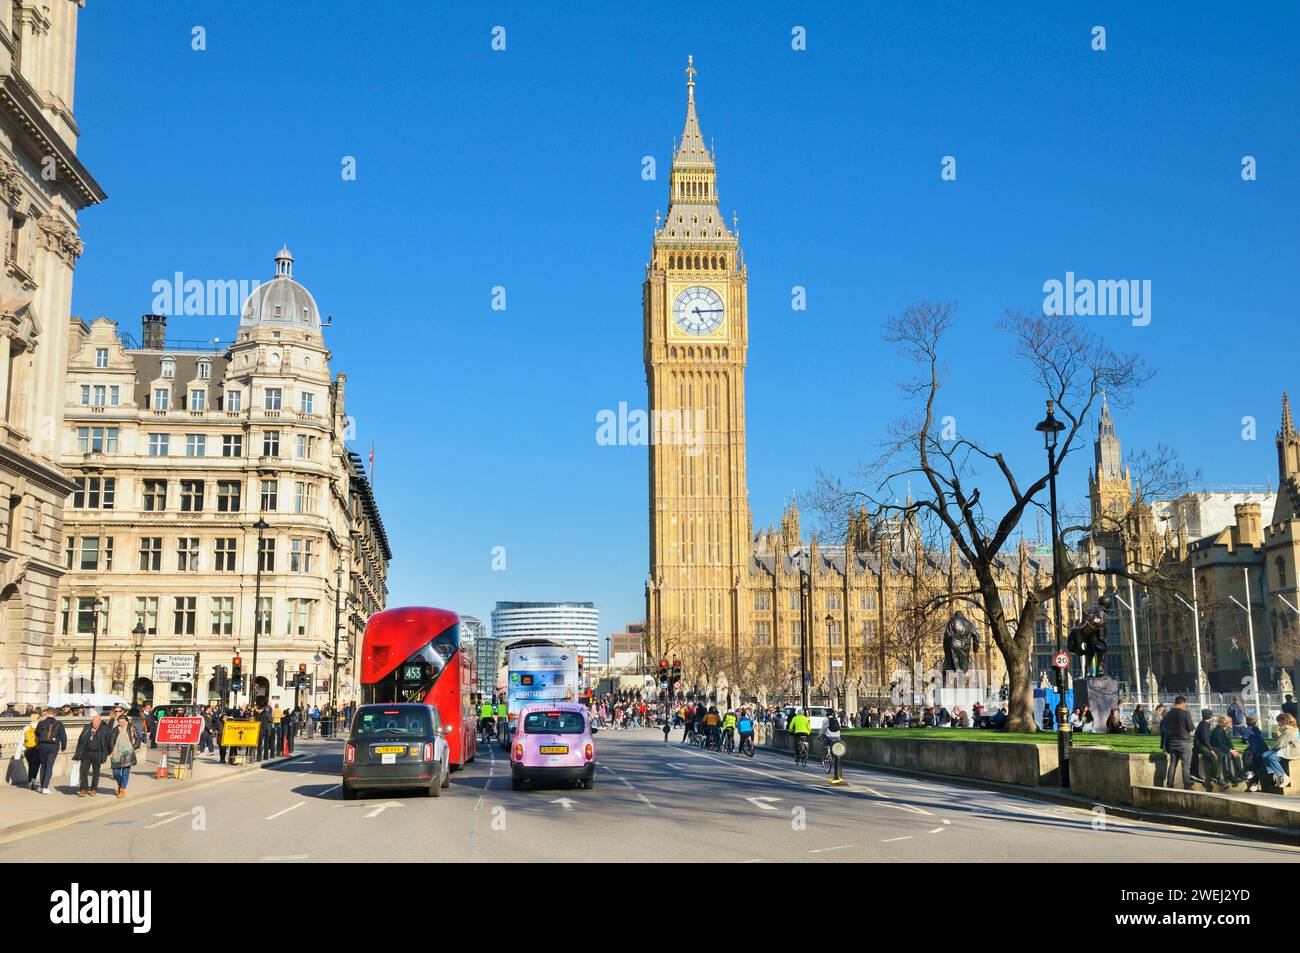 Vue de Great George Street vers Elizabeth Tower, communément appelé Big Ben, avec les chambres du Parlement, la ville de Westminster, le centre de Londres, Royaume-Uni Banque D'Images